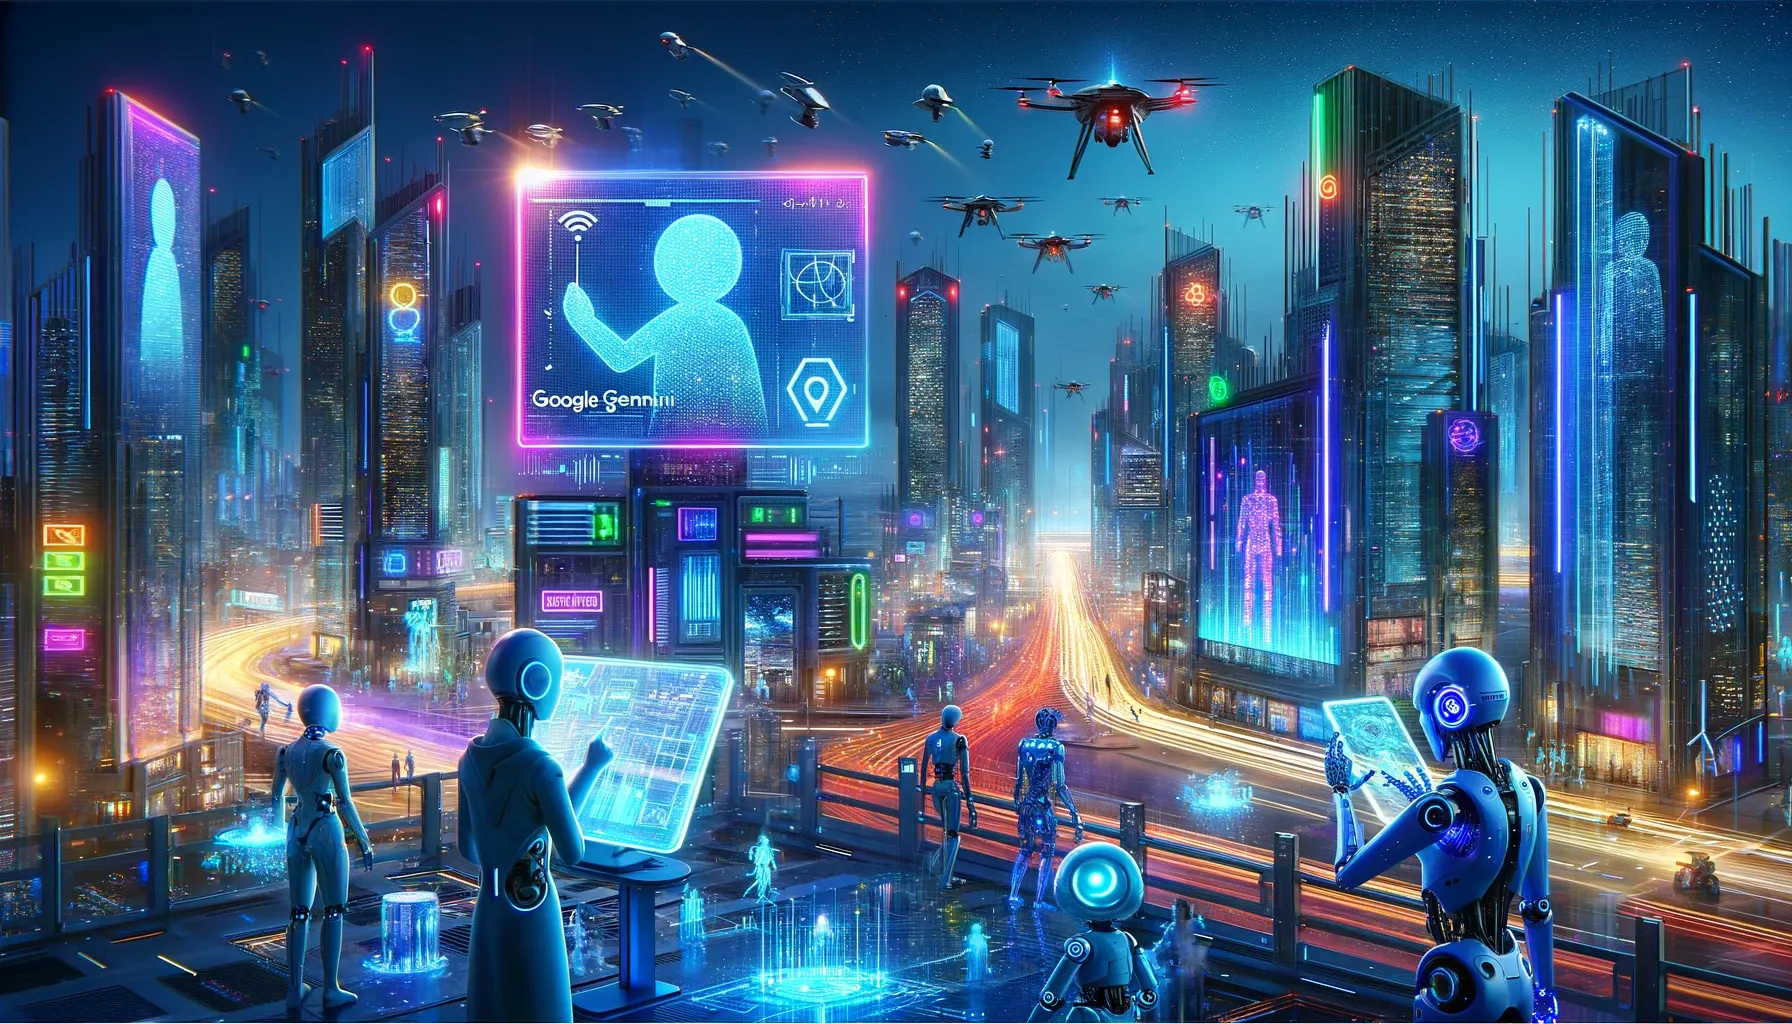 Imagina un paisaje urbano ciberpunk futurista con rascacielos iluminados por neón, donde robots avanzados y humanos interactúan utilizando dispositivos Google Gemini. Incluye pantallas holográficas mostrando códigos complejos y gráficos de inteligencia artificial, con un fondo de cielo nocturno lleno de drones y vehículos voladores